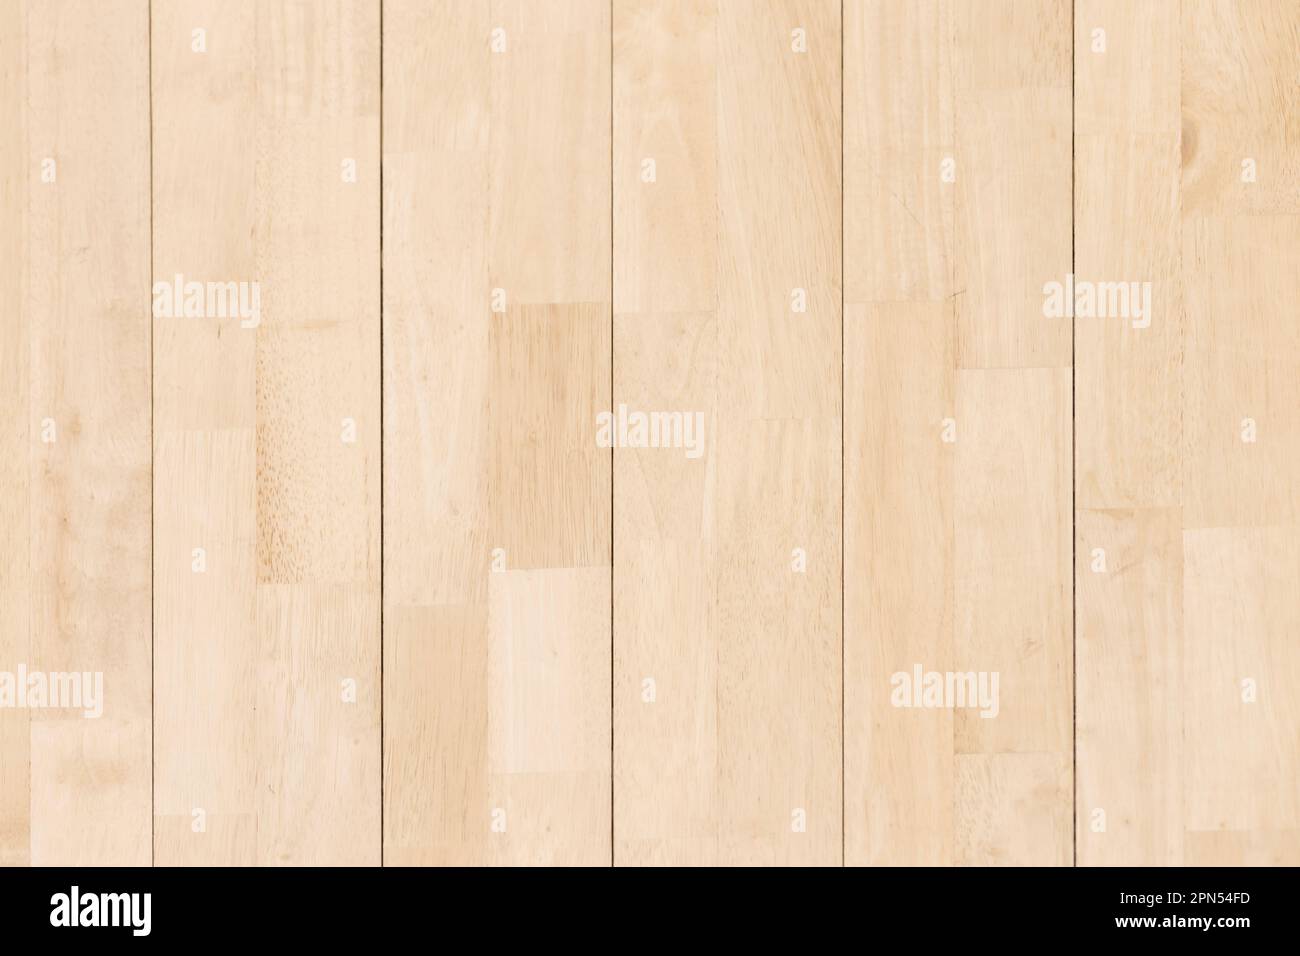 Holz Muster Textur Hintergrund, Holz Parkett Hintergrund Textur. Horizontales kreatives Thema Poster, Grußkarten, Header, Website und App Stockfoto